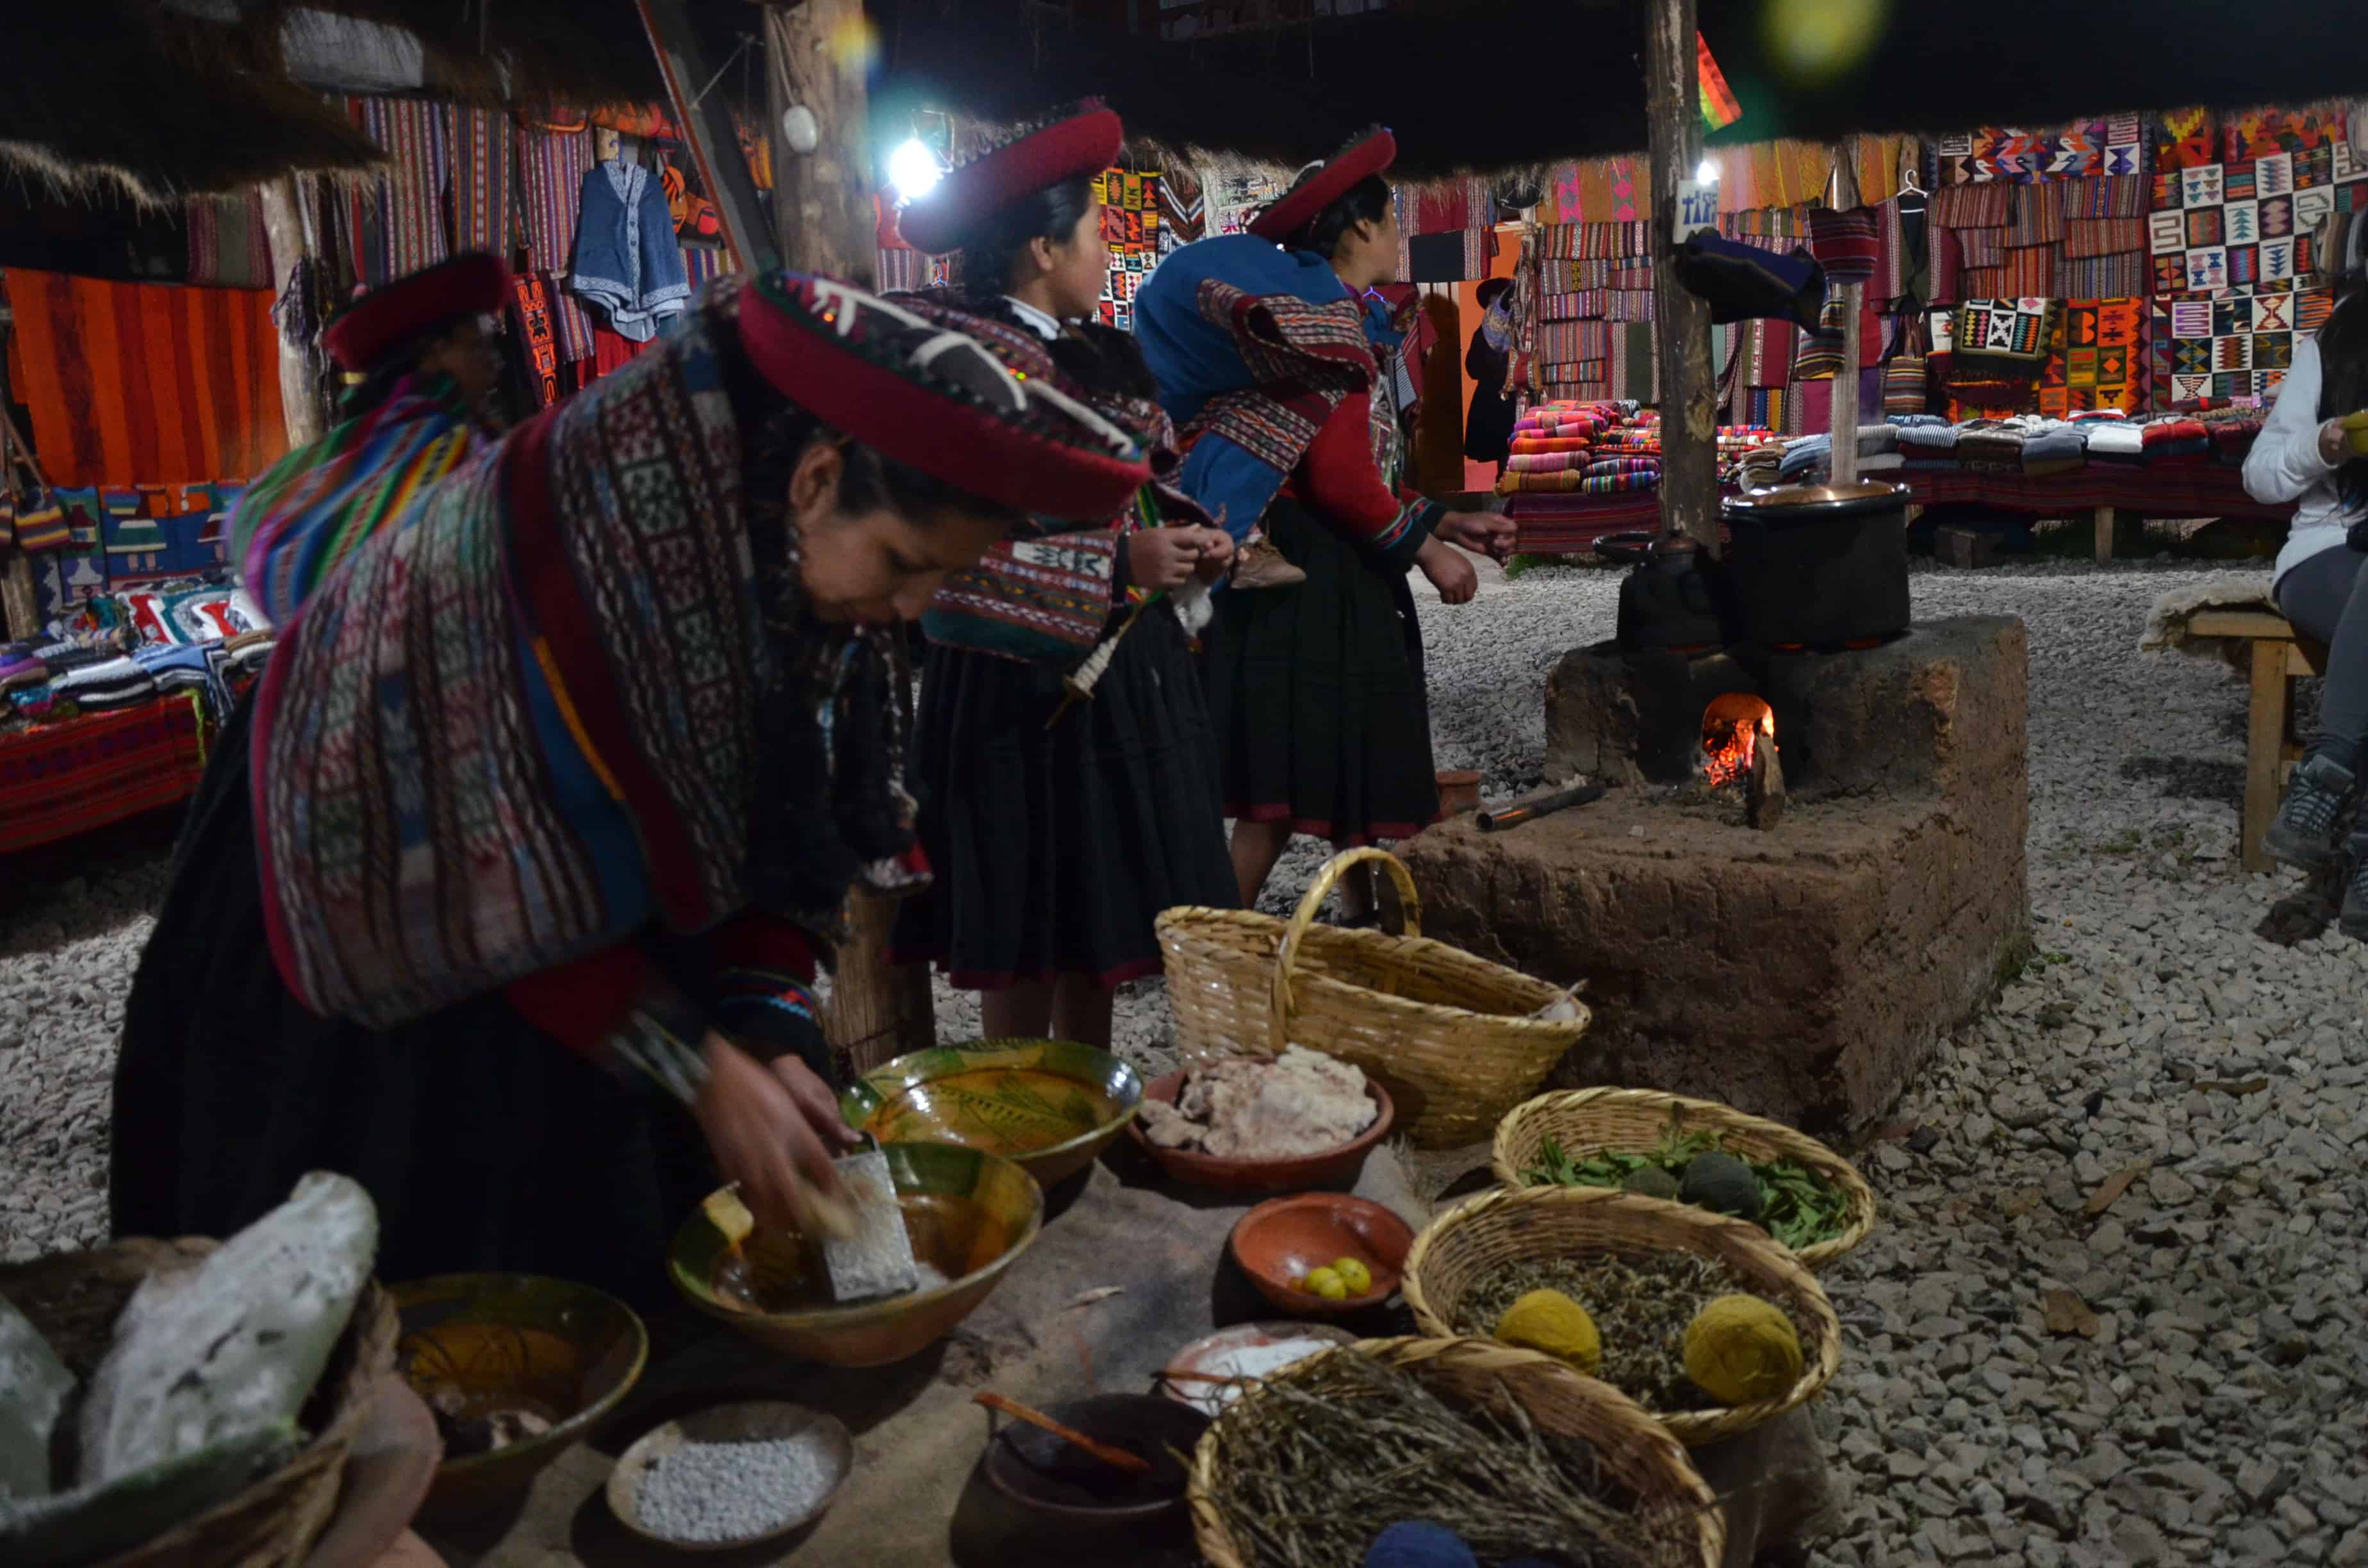 Craft market in Chinchero, Peru